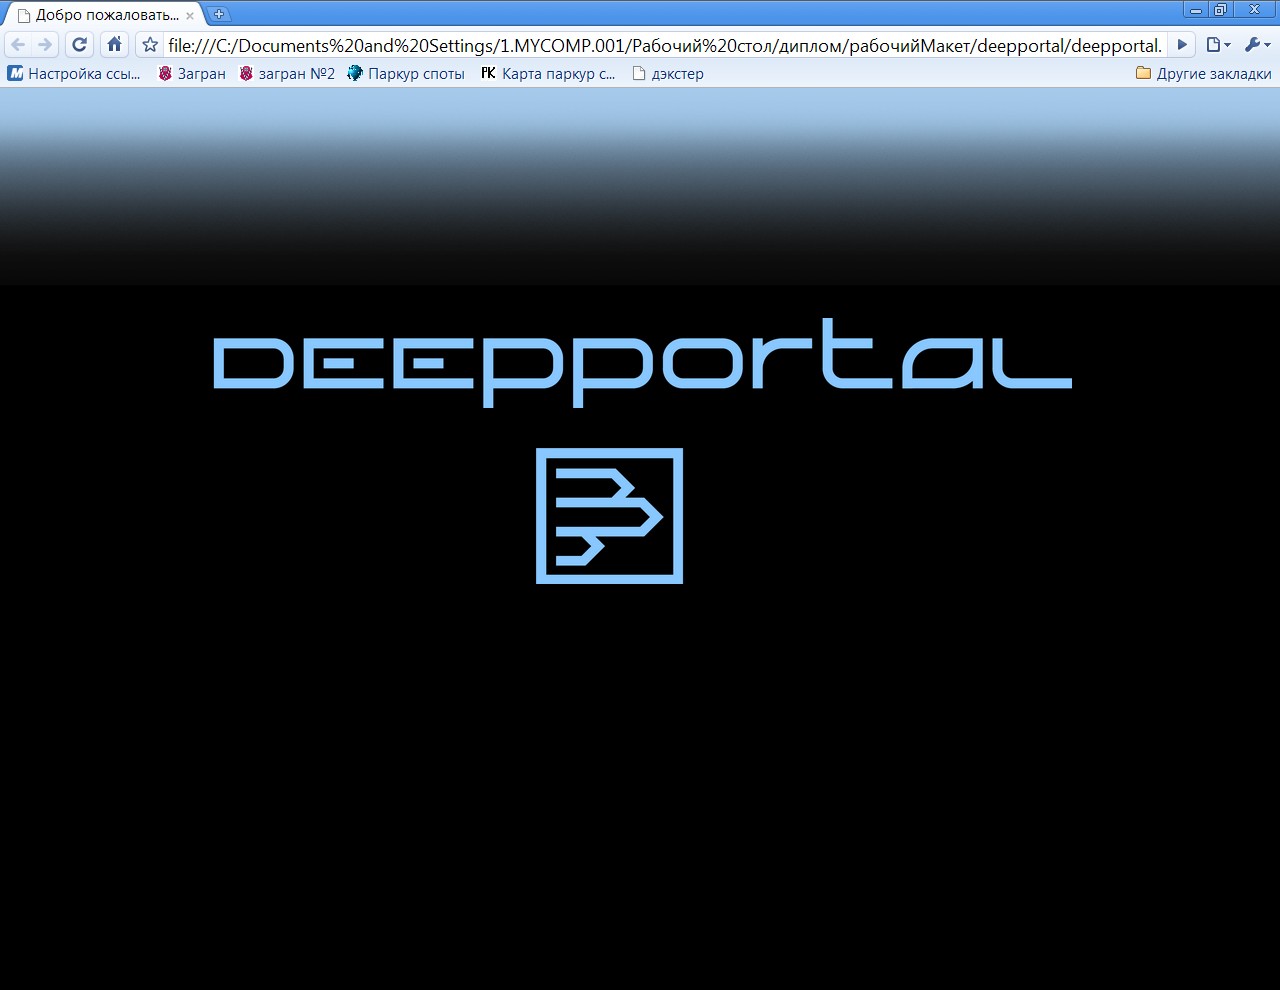 deepportal